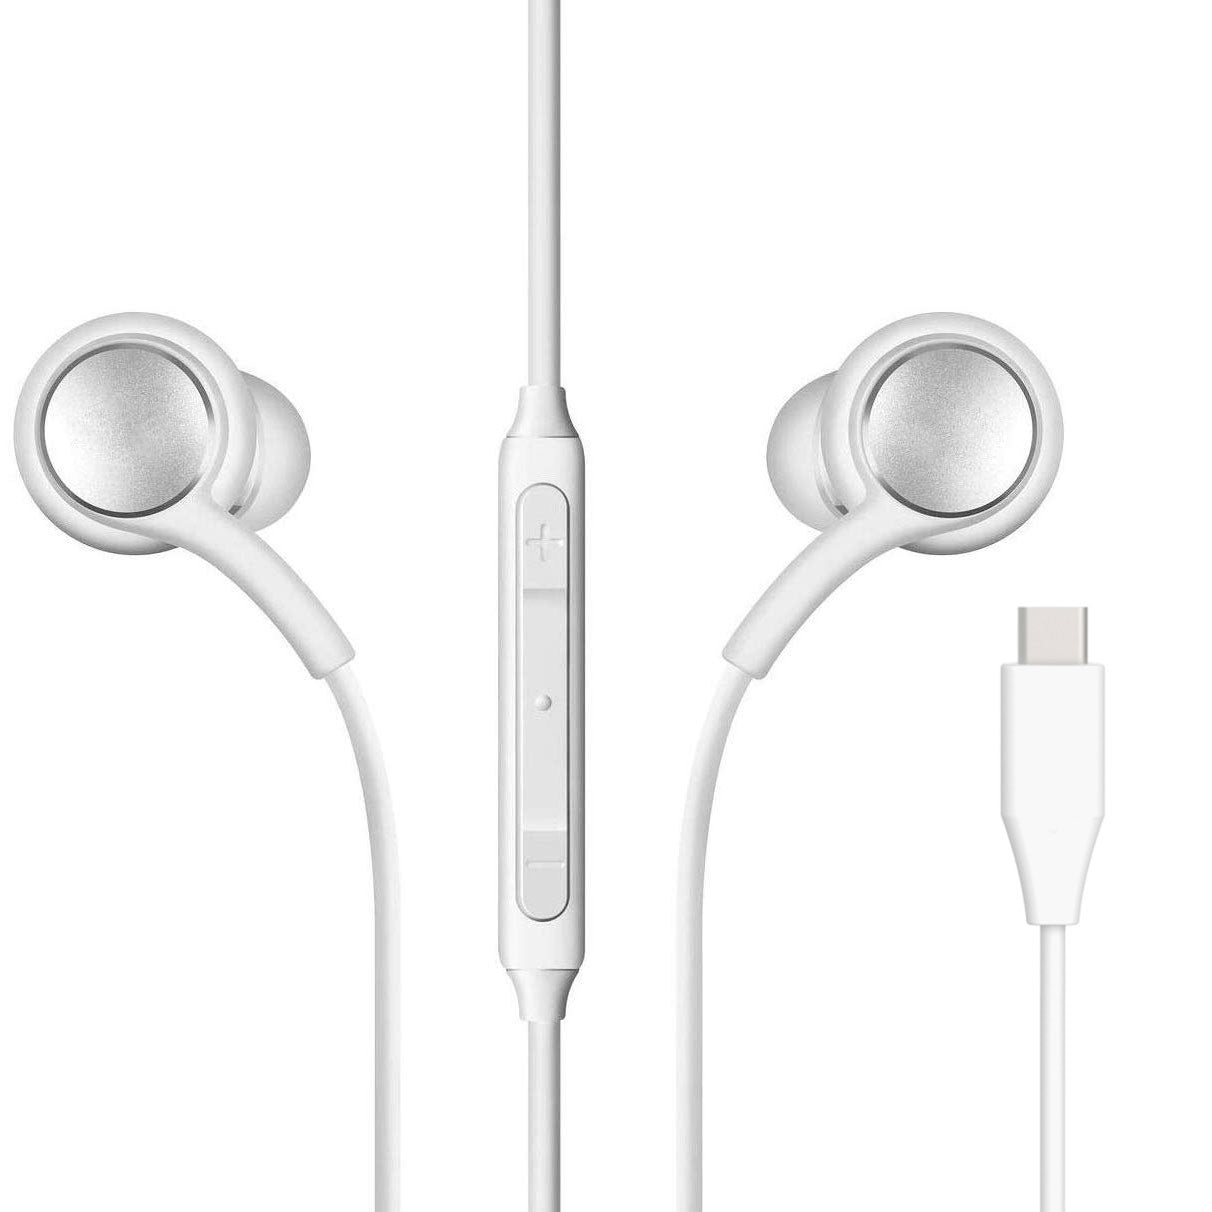 TYPE-C Earphones Headphones  USB-C Earbuds   w Mic  Headset Handsfree   - ONXG60 2085-1